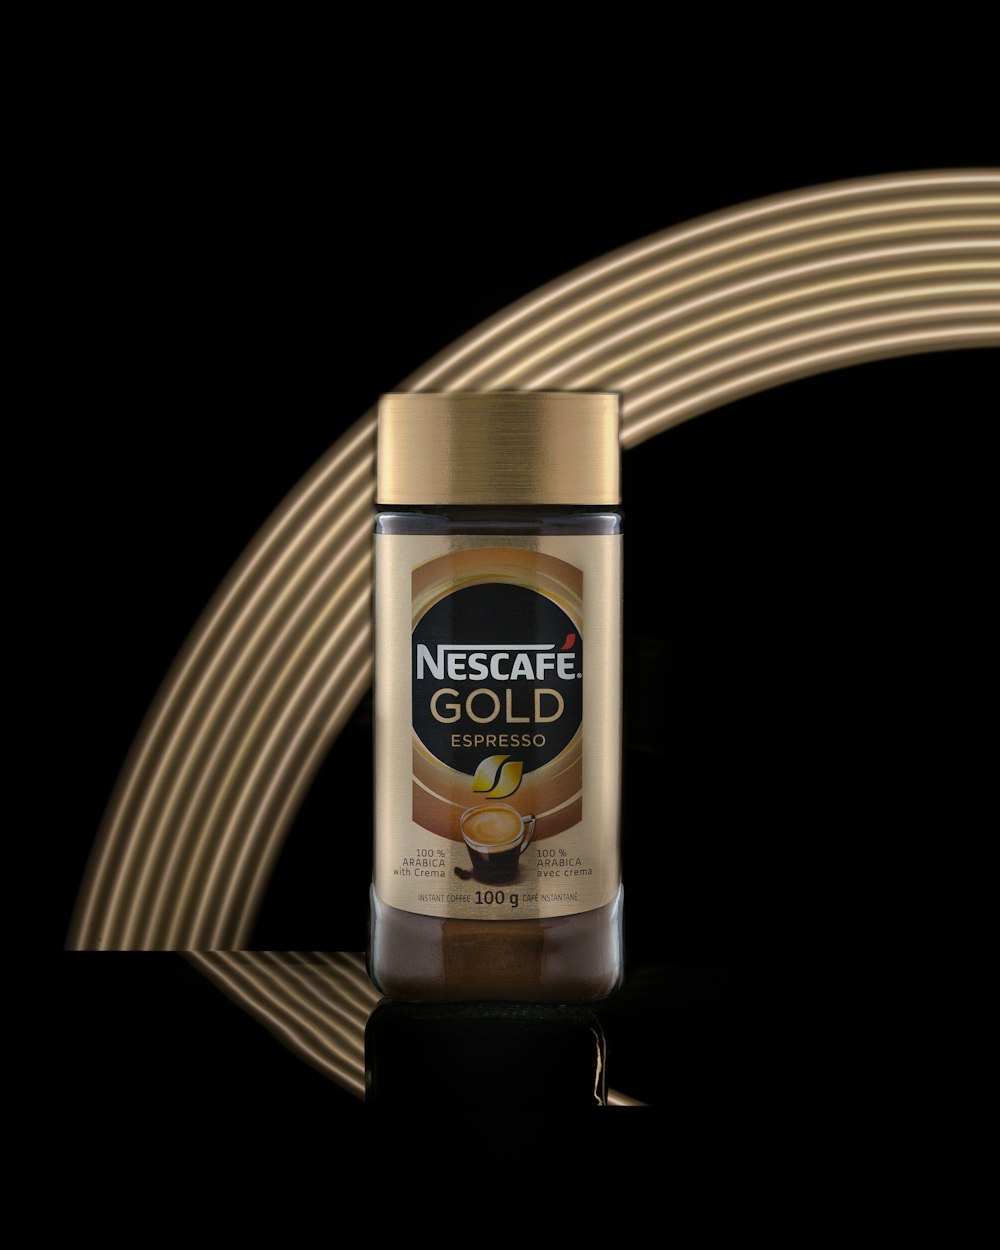 Nescafe Gold Espresso bottle photo – Free Image on Unsplash